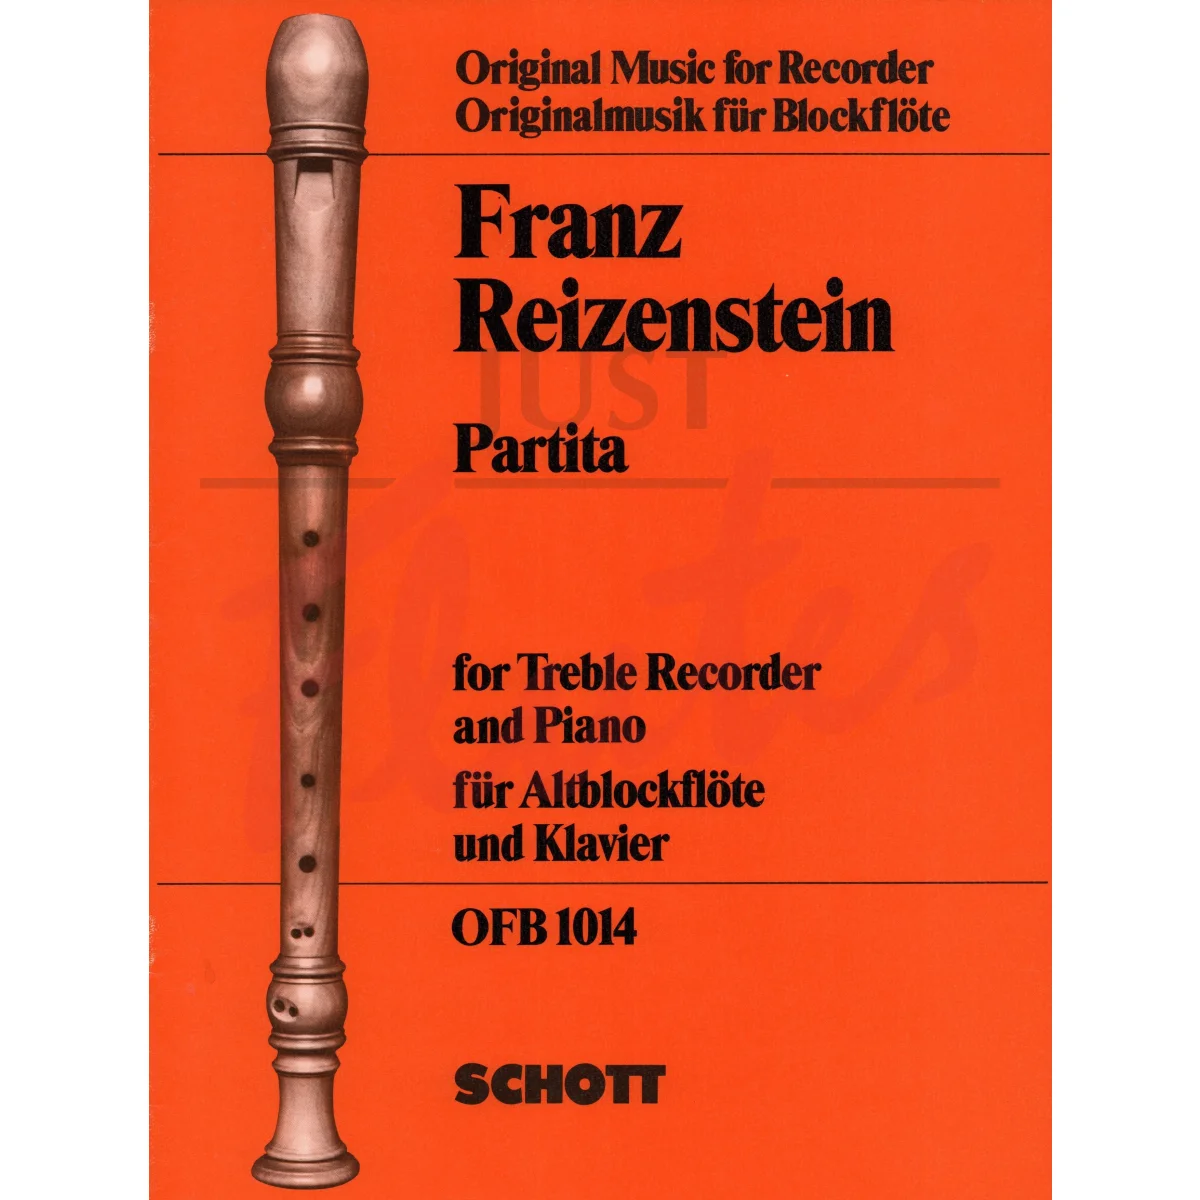 Partita for Flute/Treble Recorder and Piano